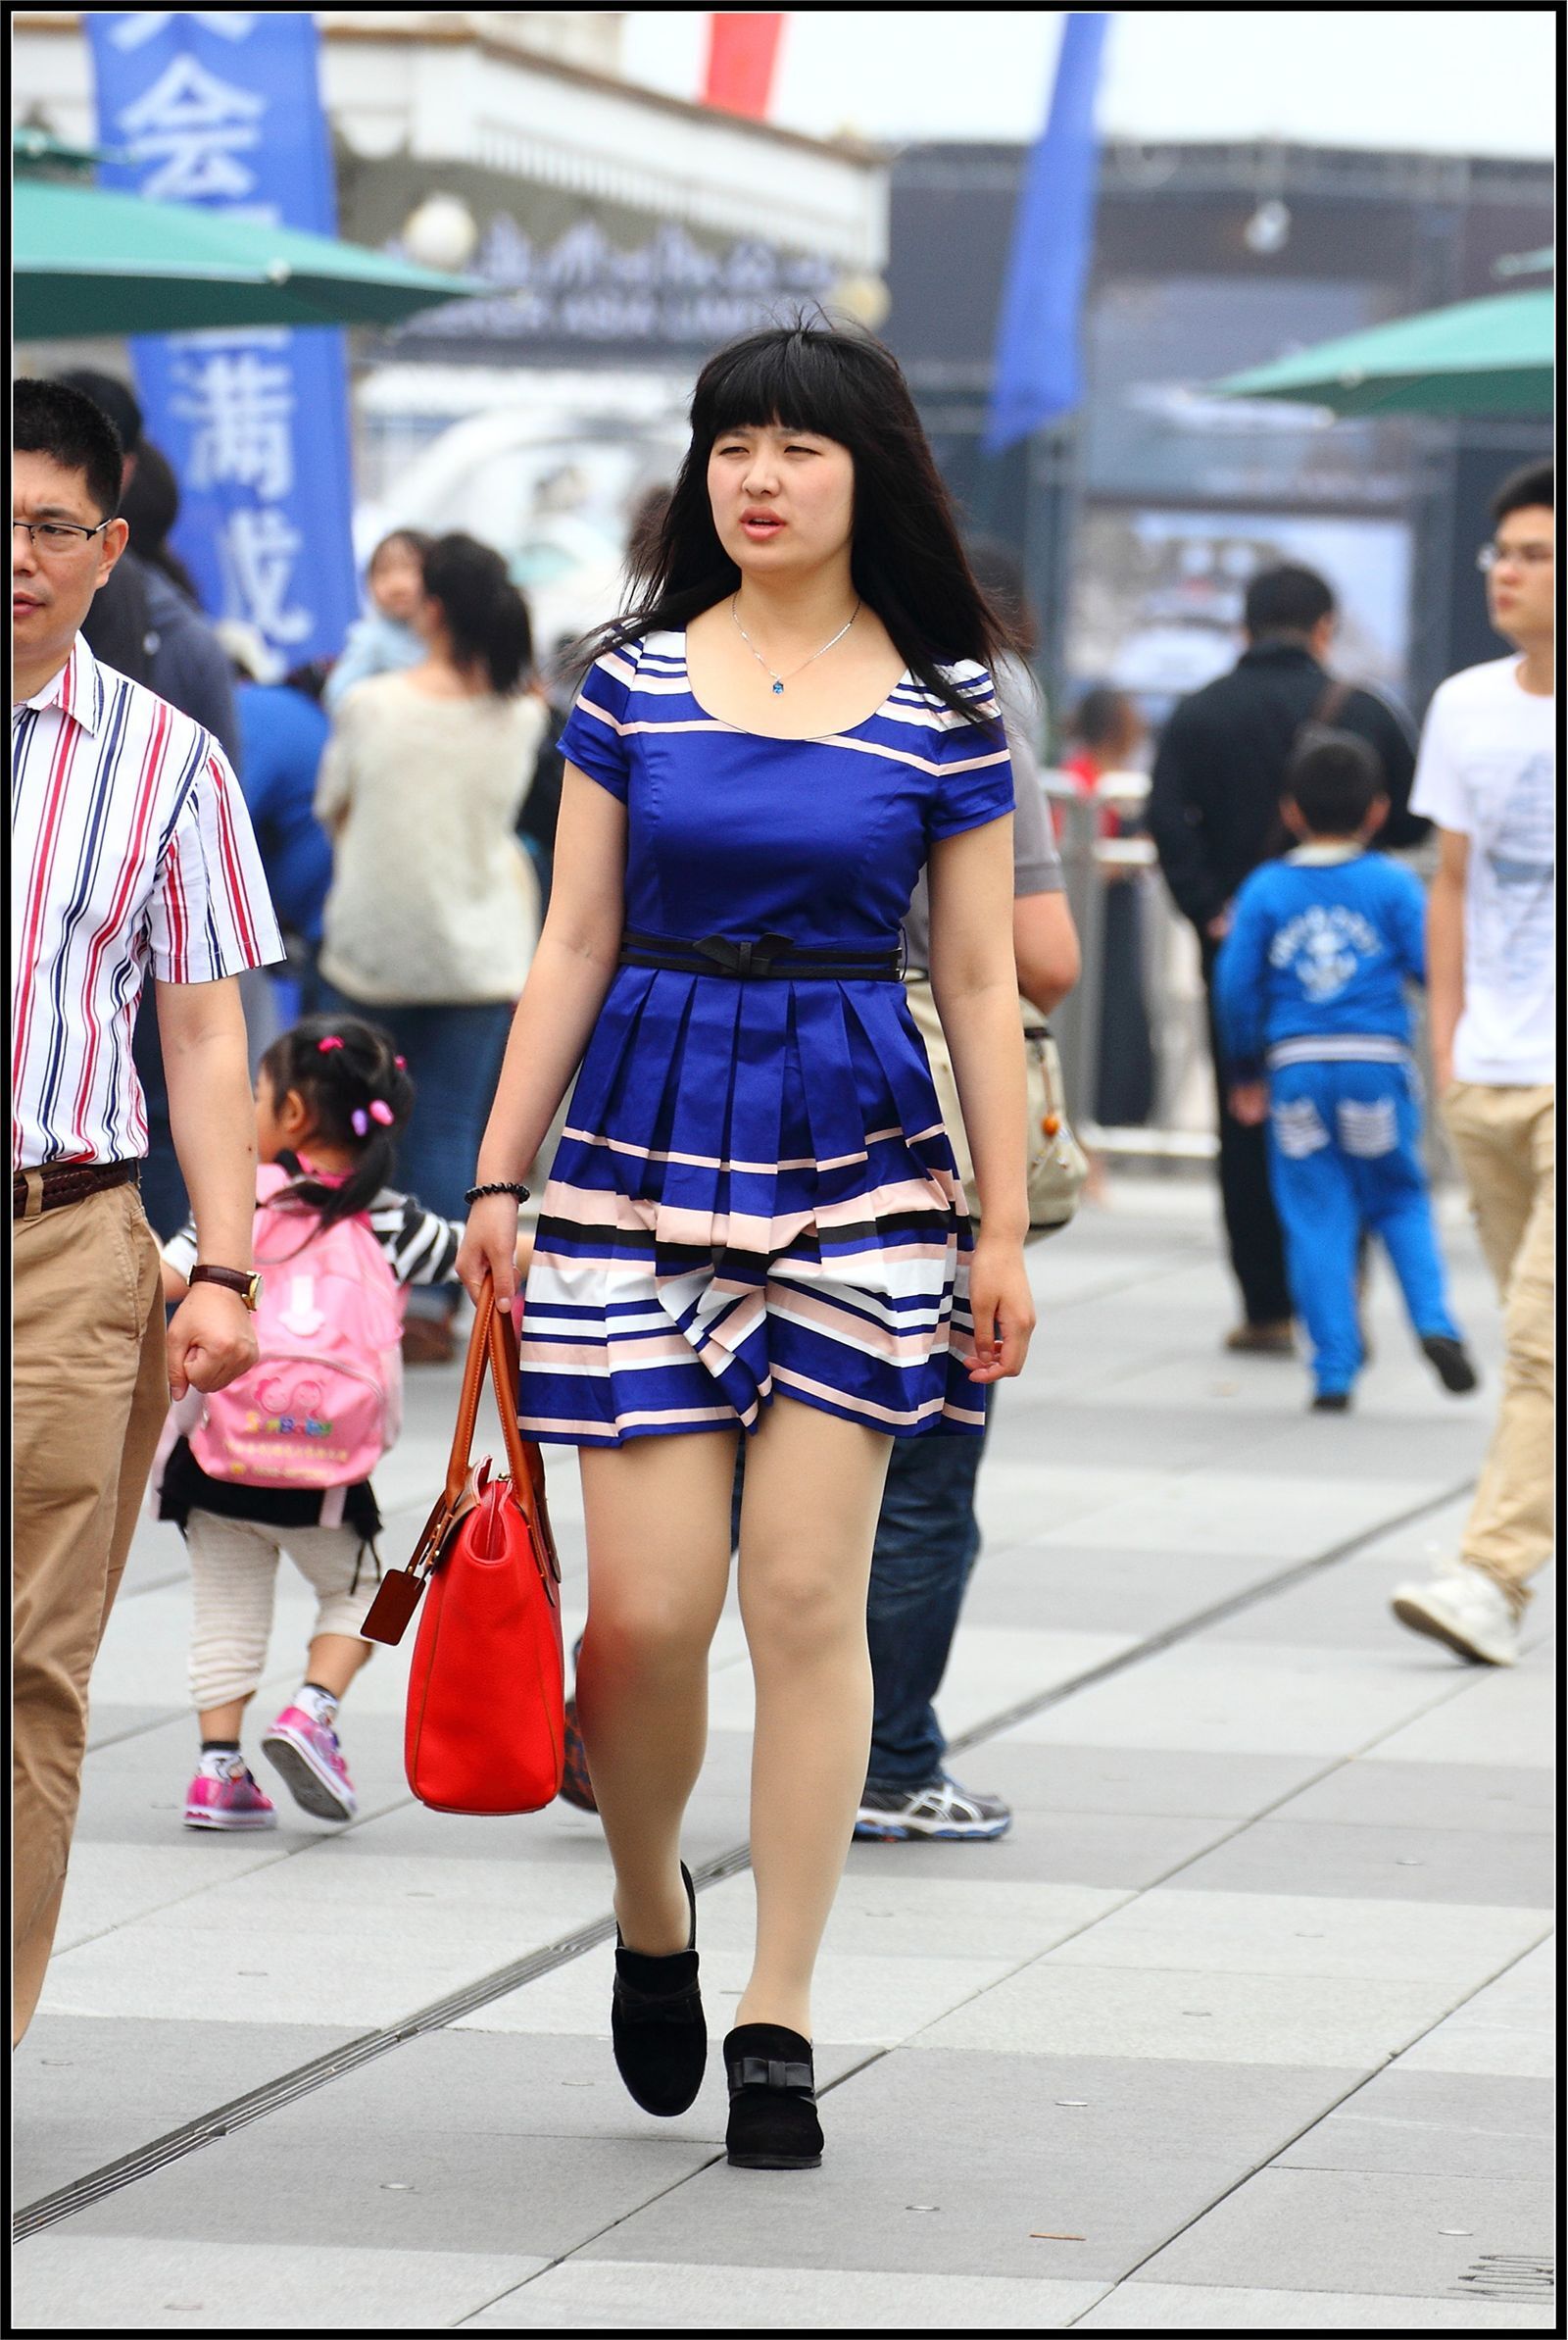 [户外街拍] 2013.11.03 海军蓝短裙肉丝美女